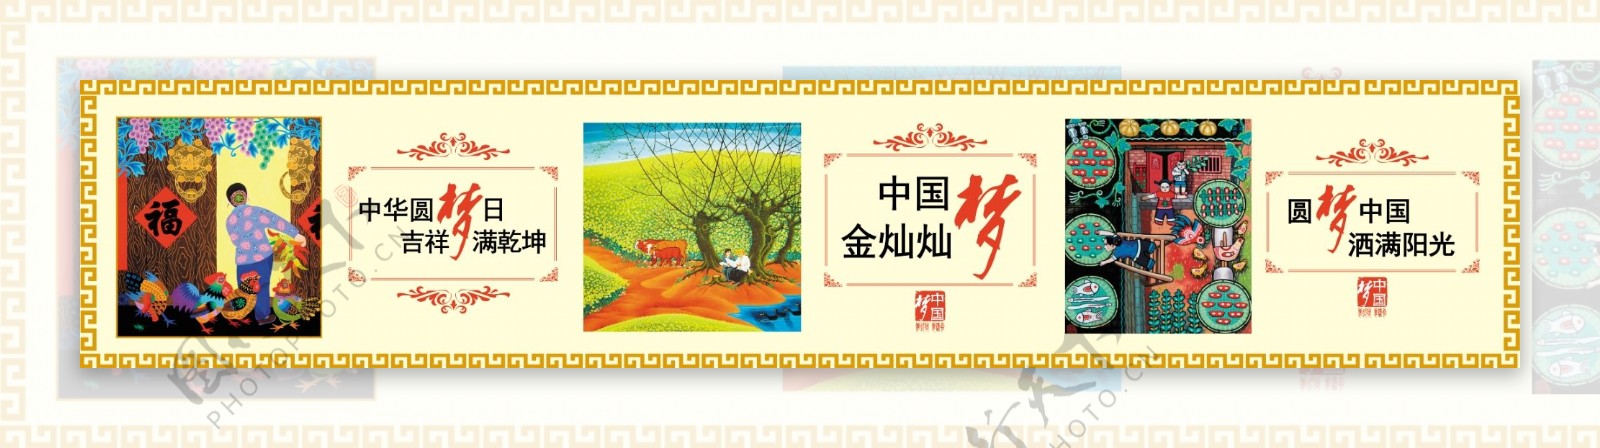 中国梦公益广告中国文化